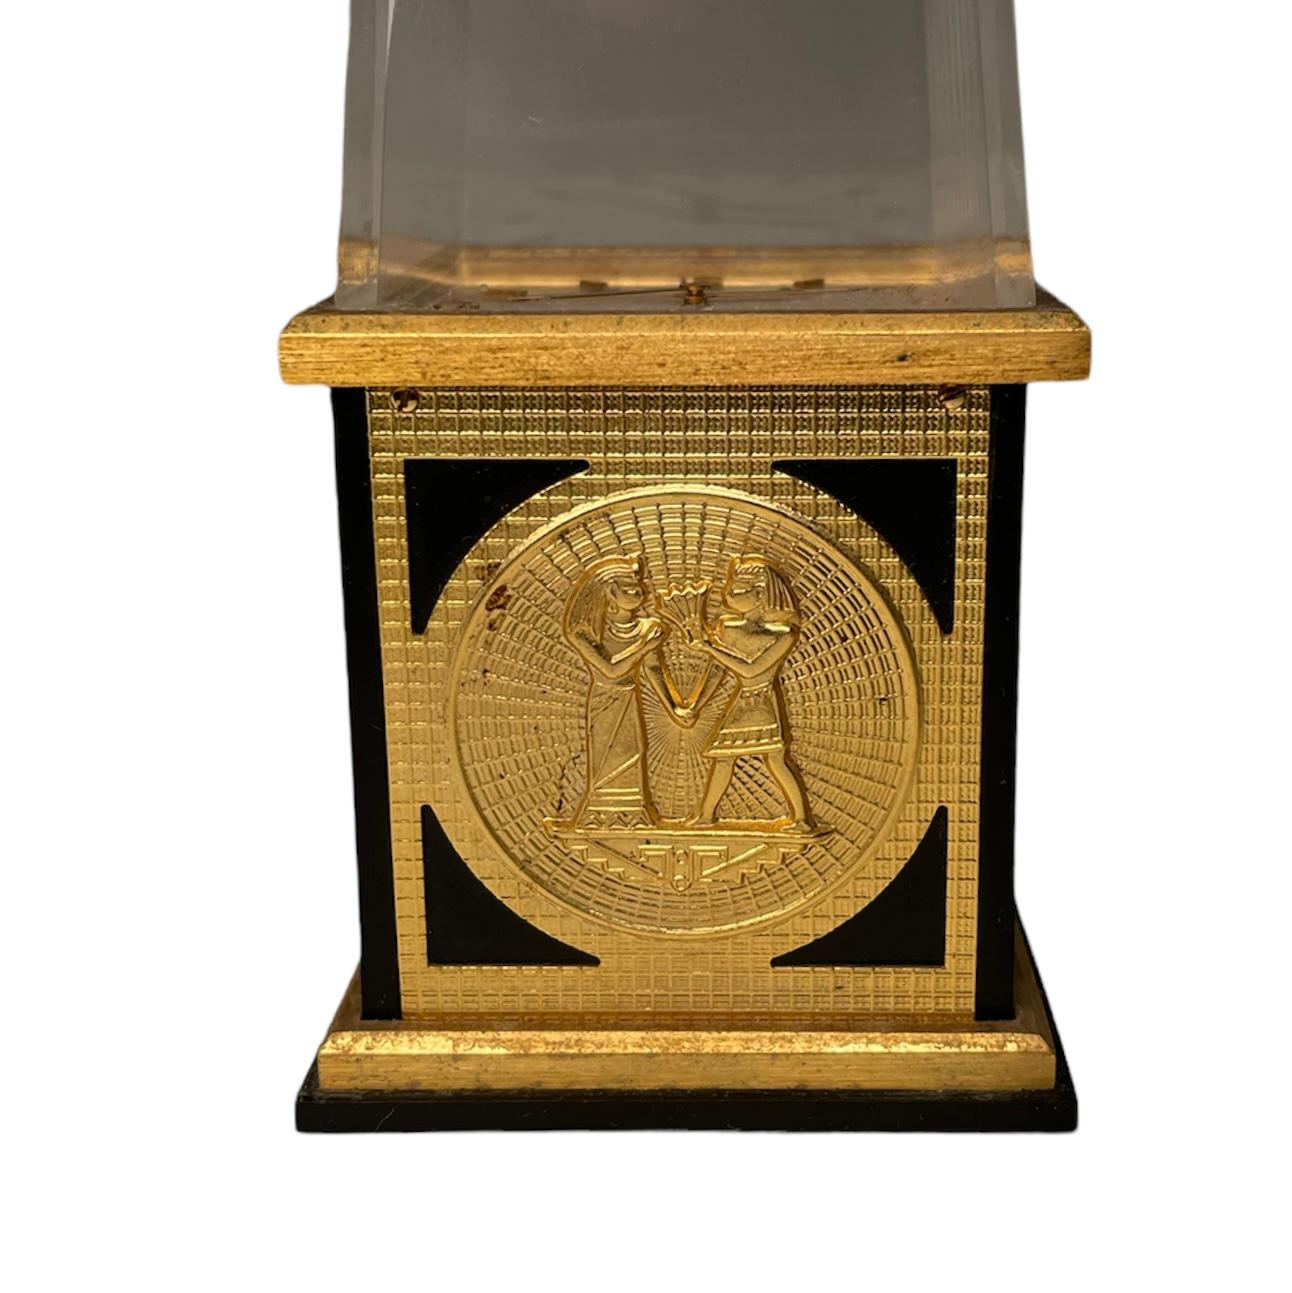 Egyptian Revival Jaeger LeCoultre Desk/Table Clock 1